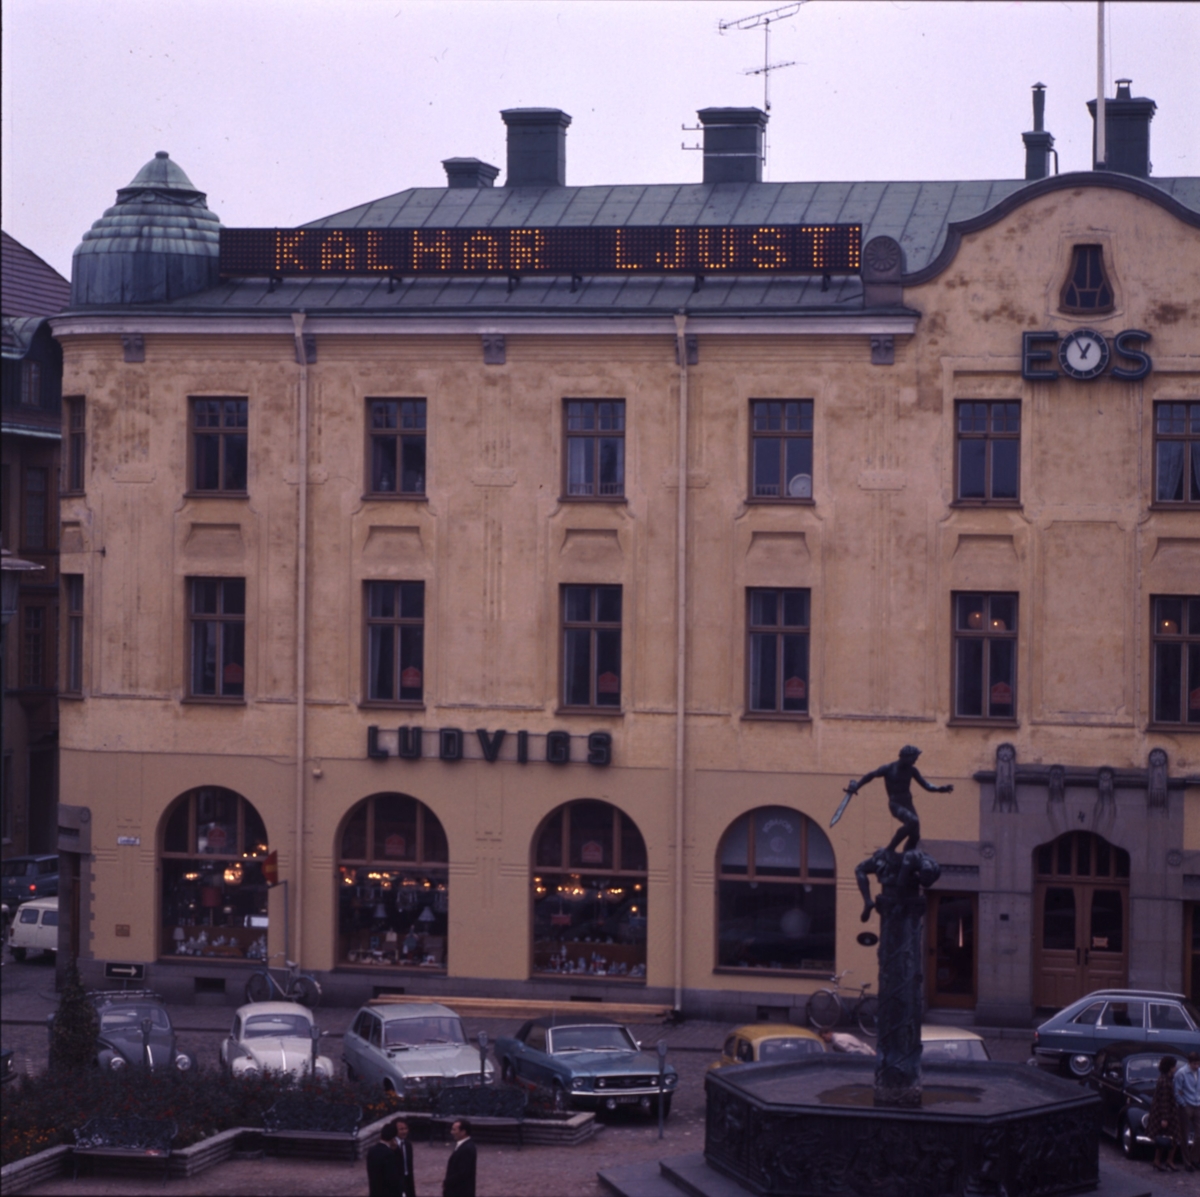 Ludvigs med Kalmar ljustidning på taket. Omkring 1970.